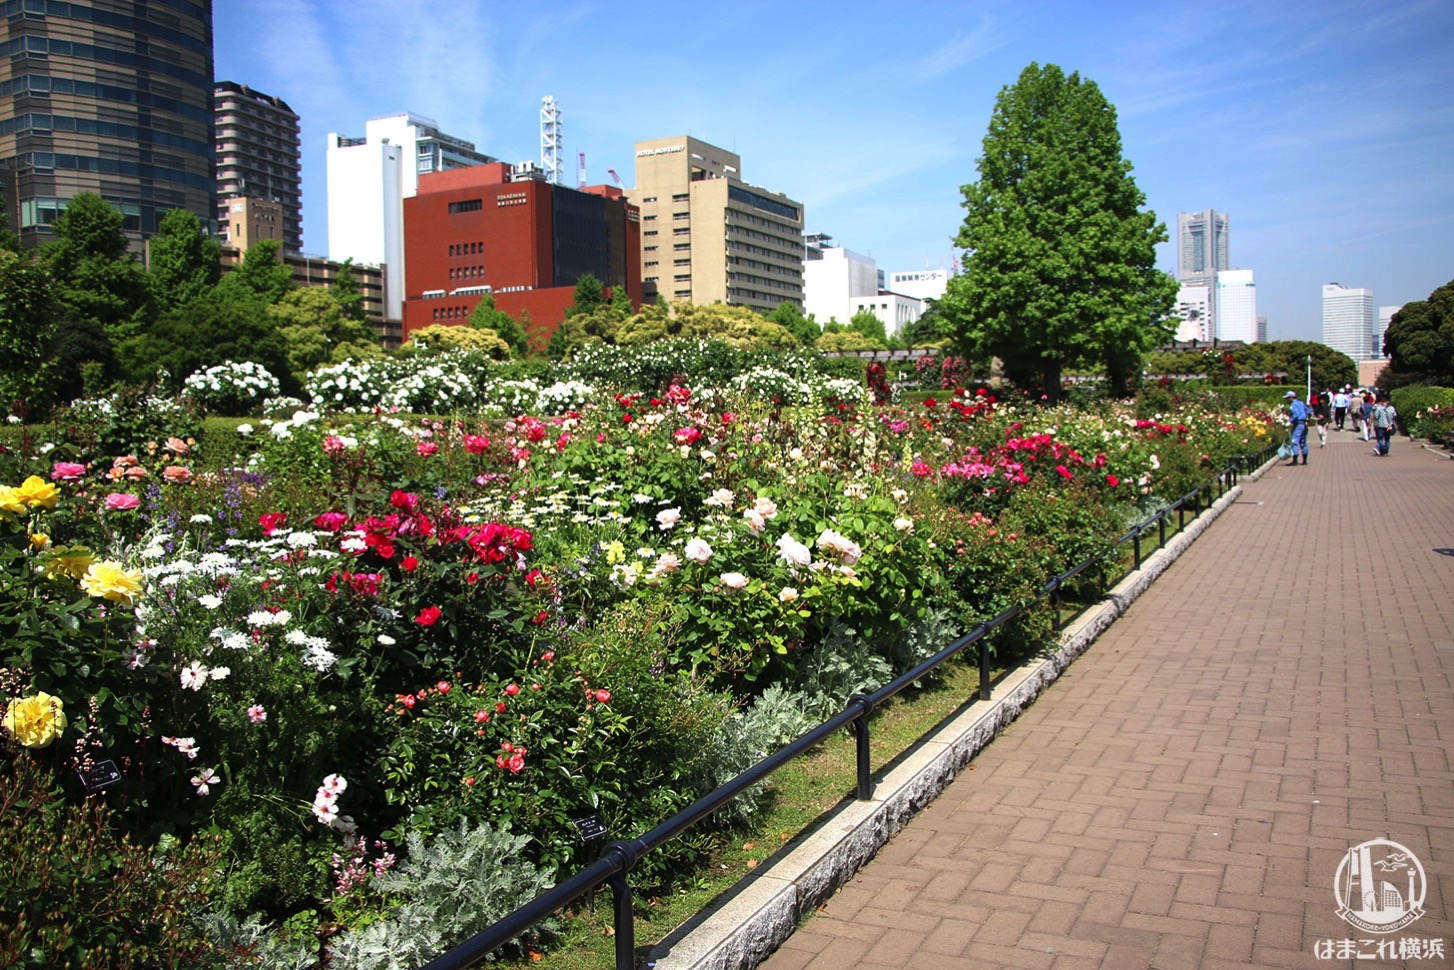 山下公園のバラが見頃で夢中になった 横浜観光ベストスポット はまこれ横浜